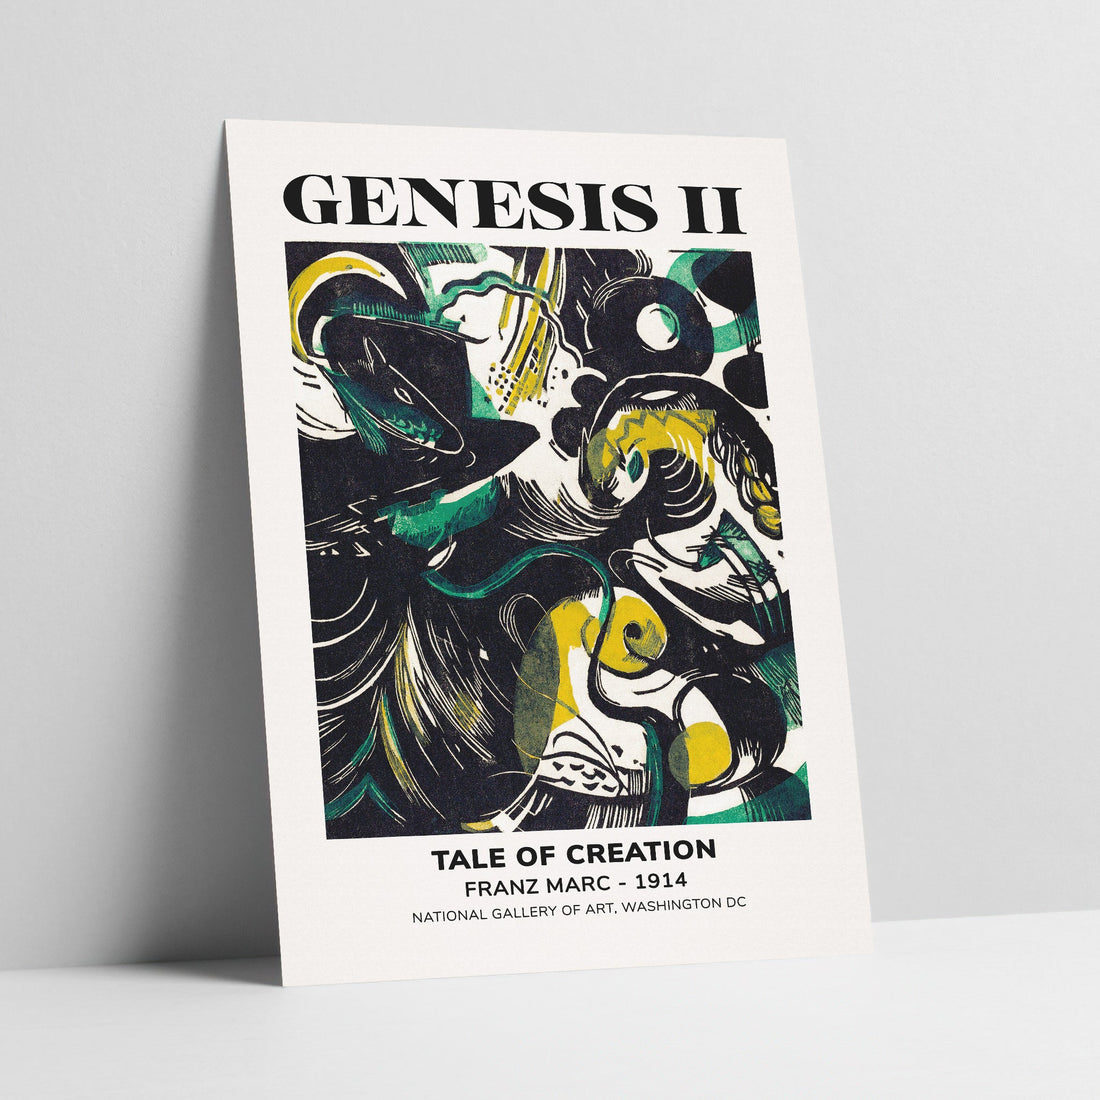 Genesis II Gallery Poster Art Print